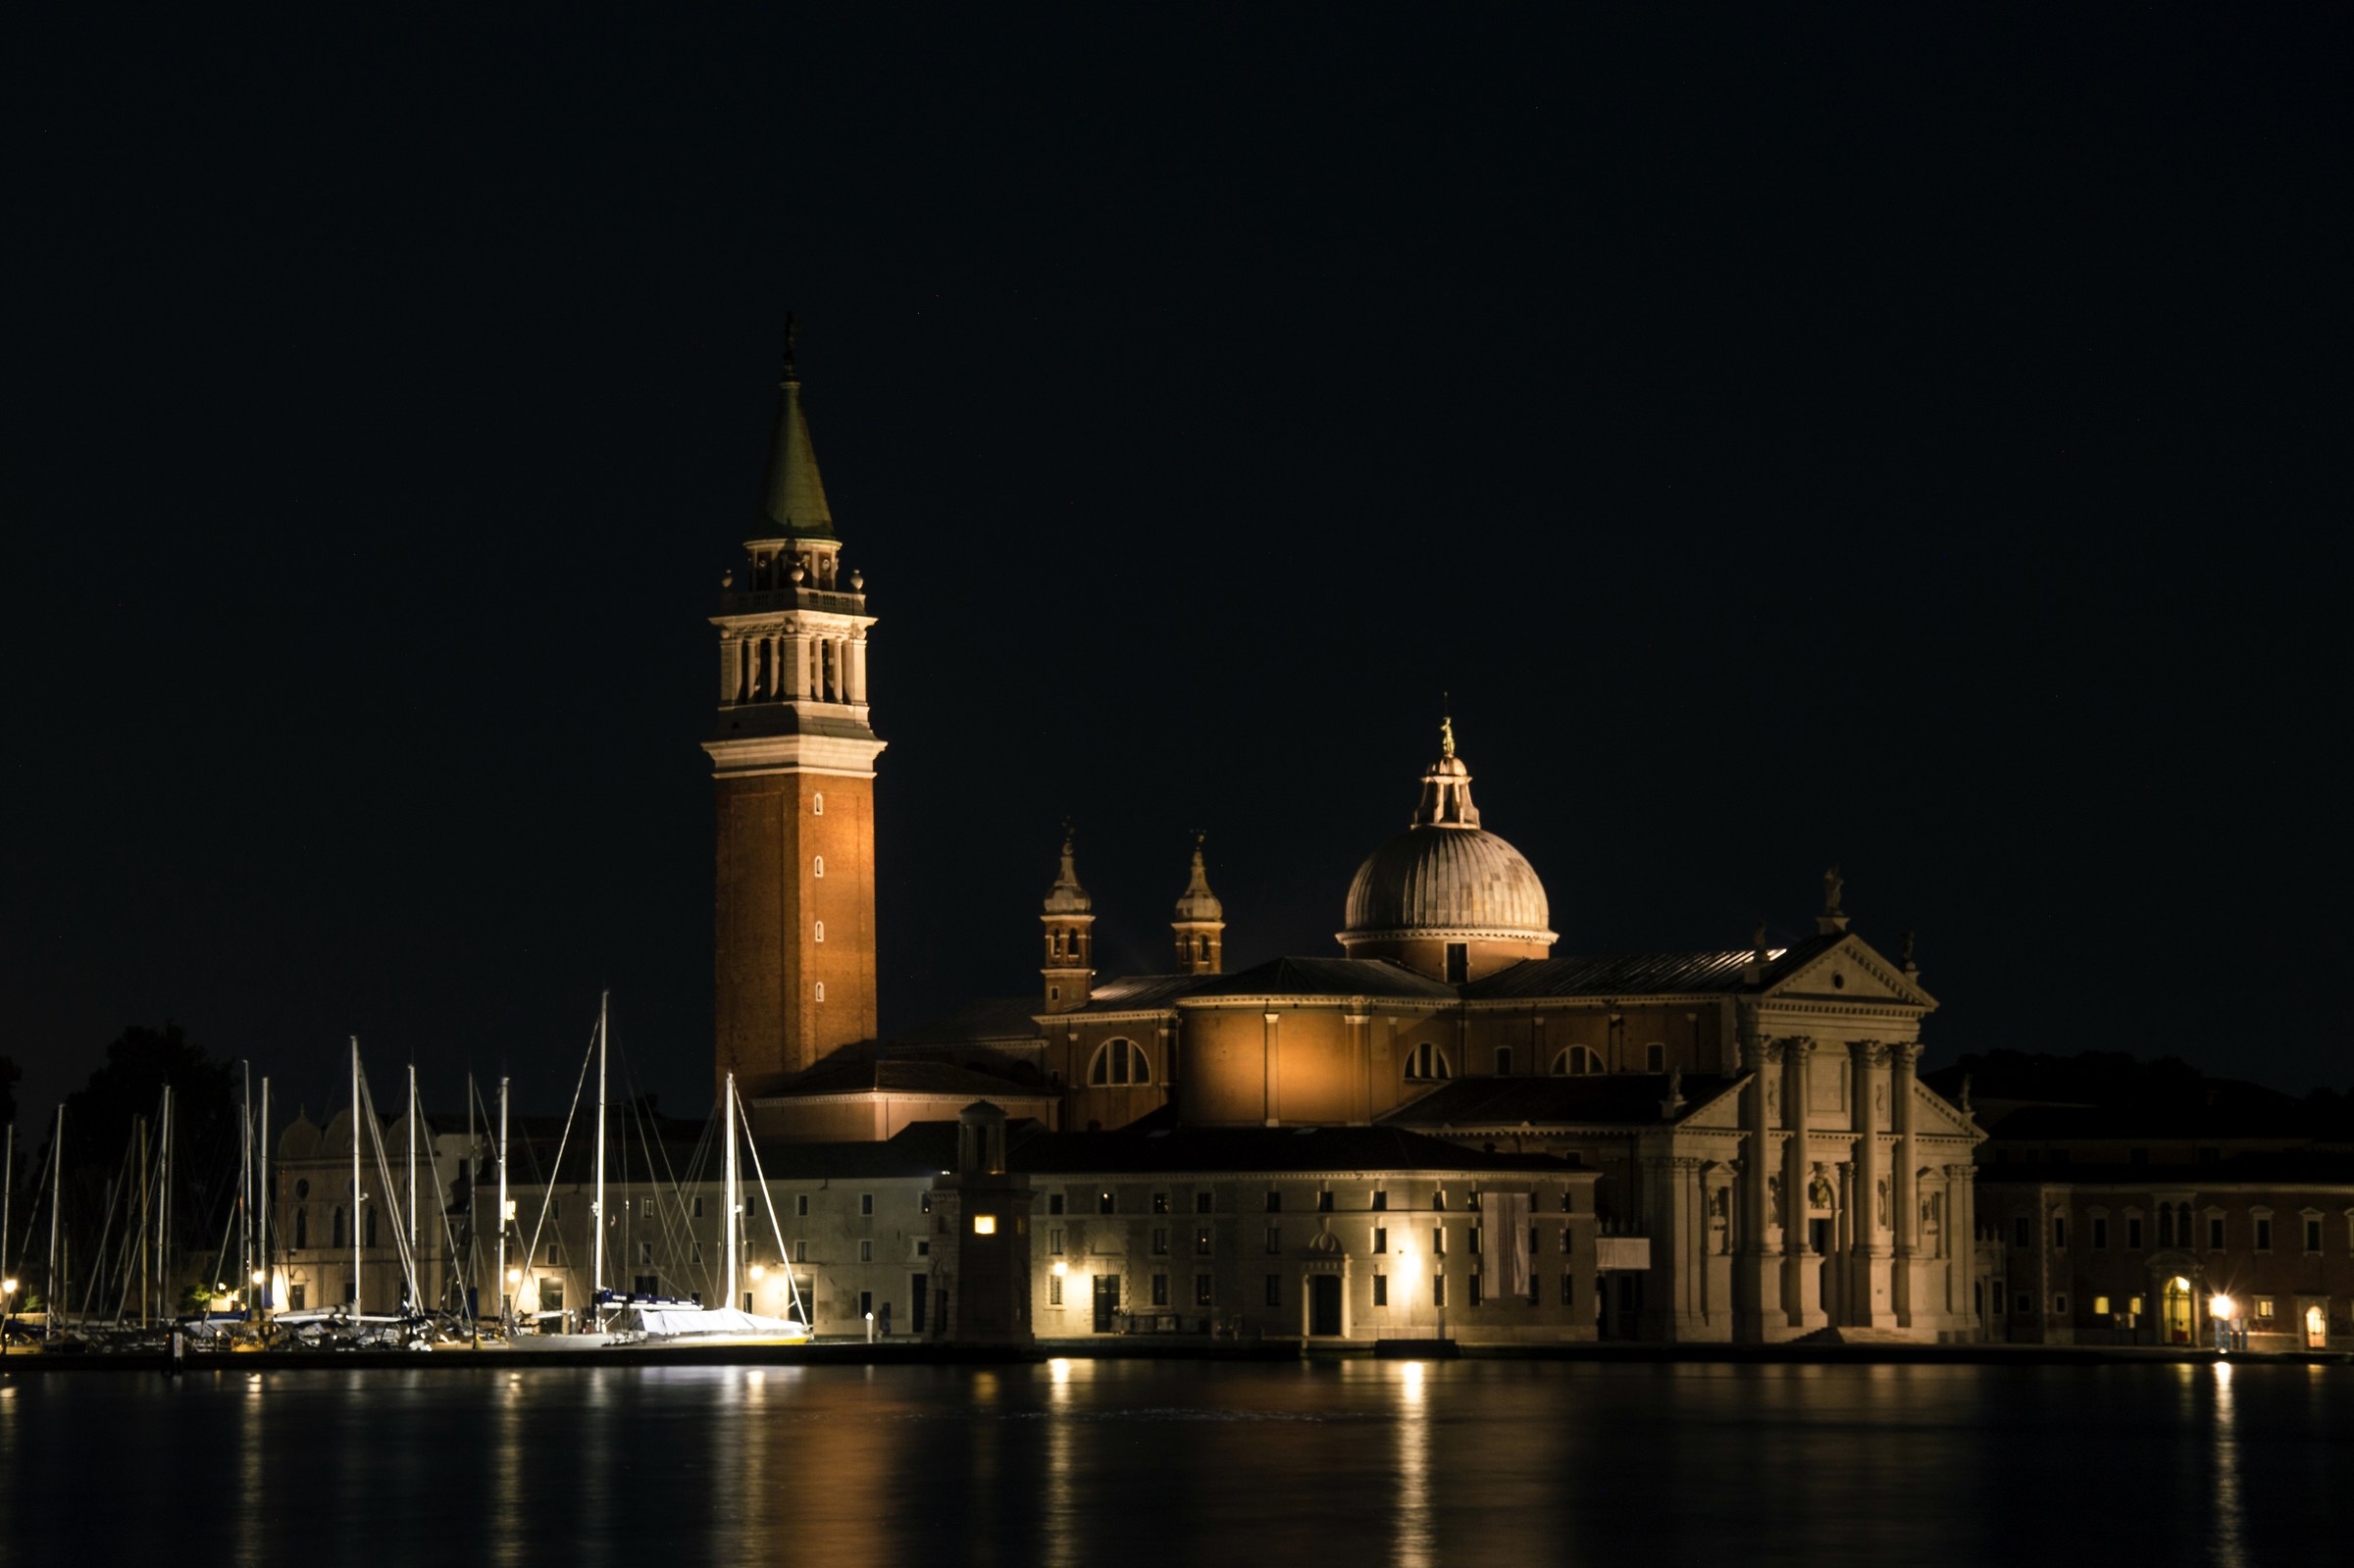 Una notte a Venezia...